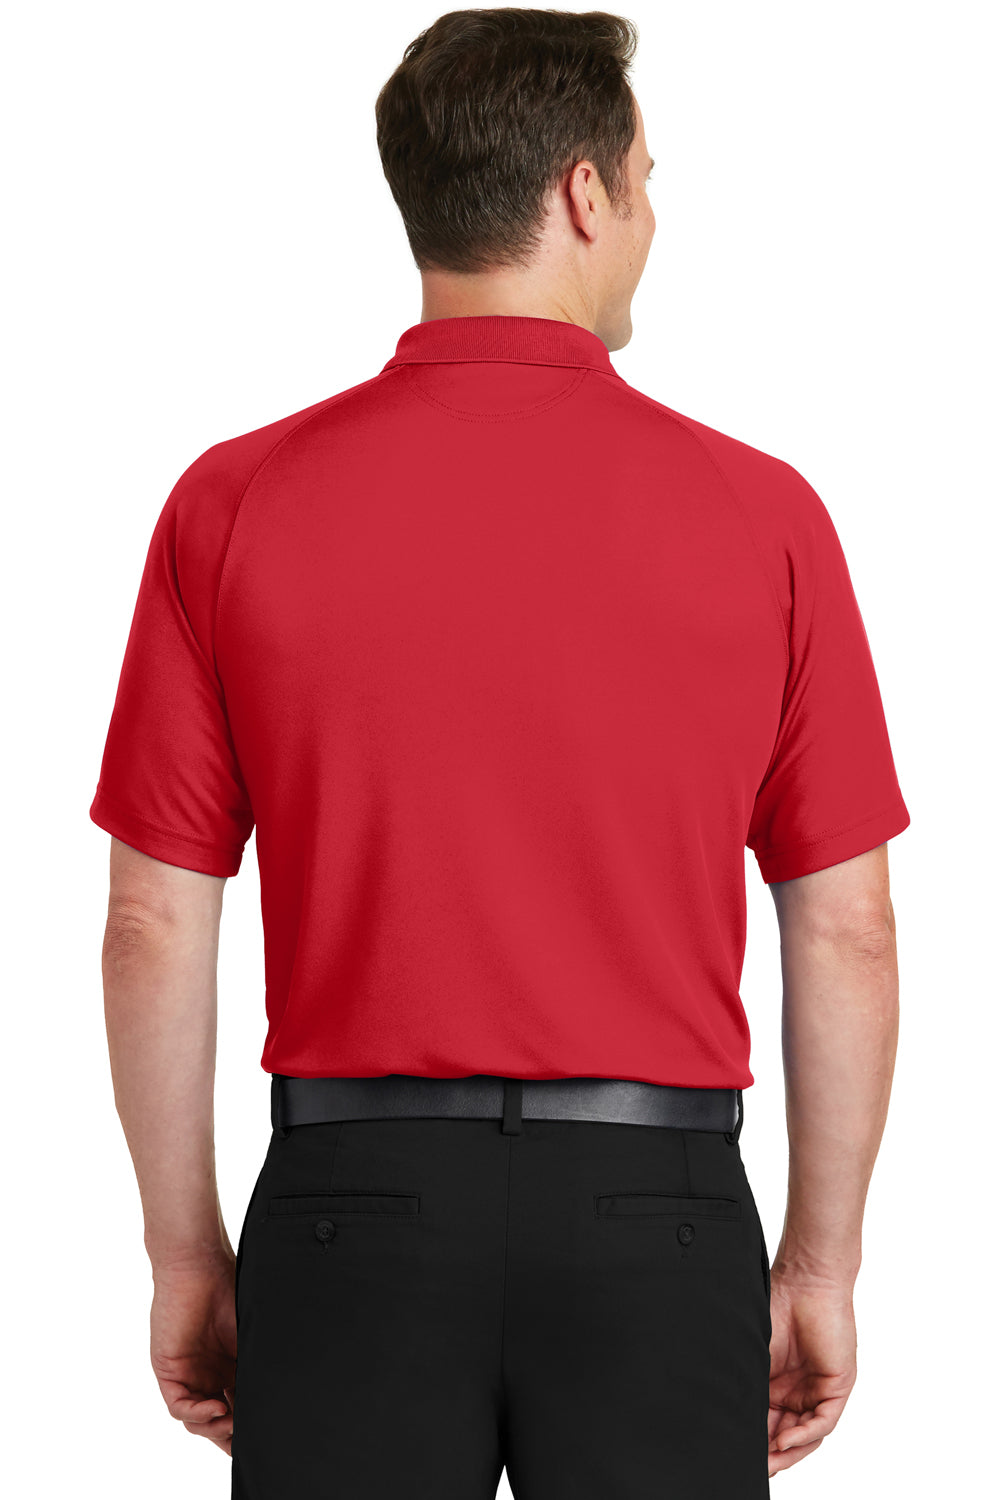 Sport-Tek T475 Mens Dry Zone Moisture Wicking Short Sleeve Polo Shirt Red Back